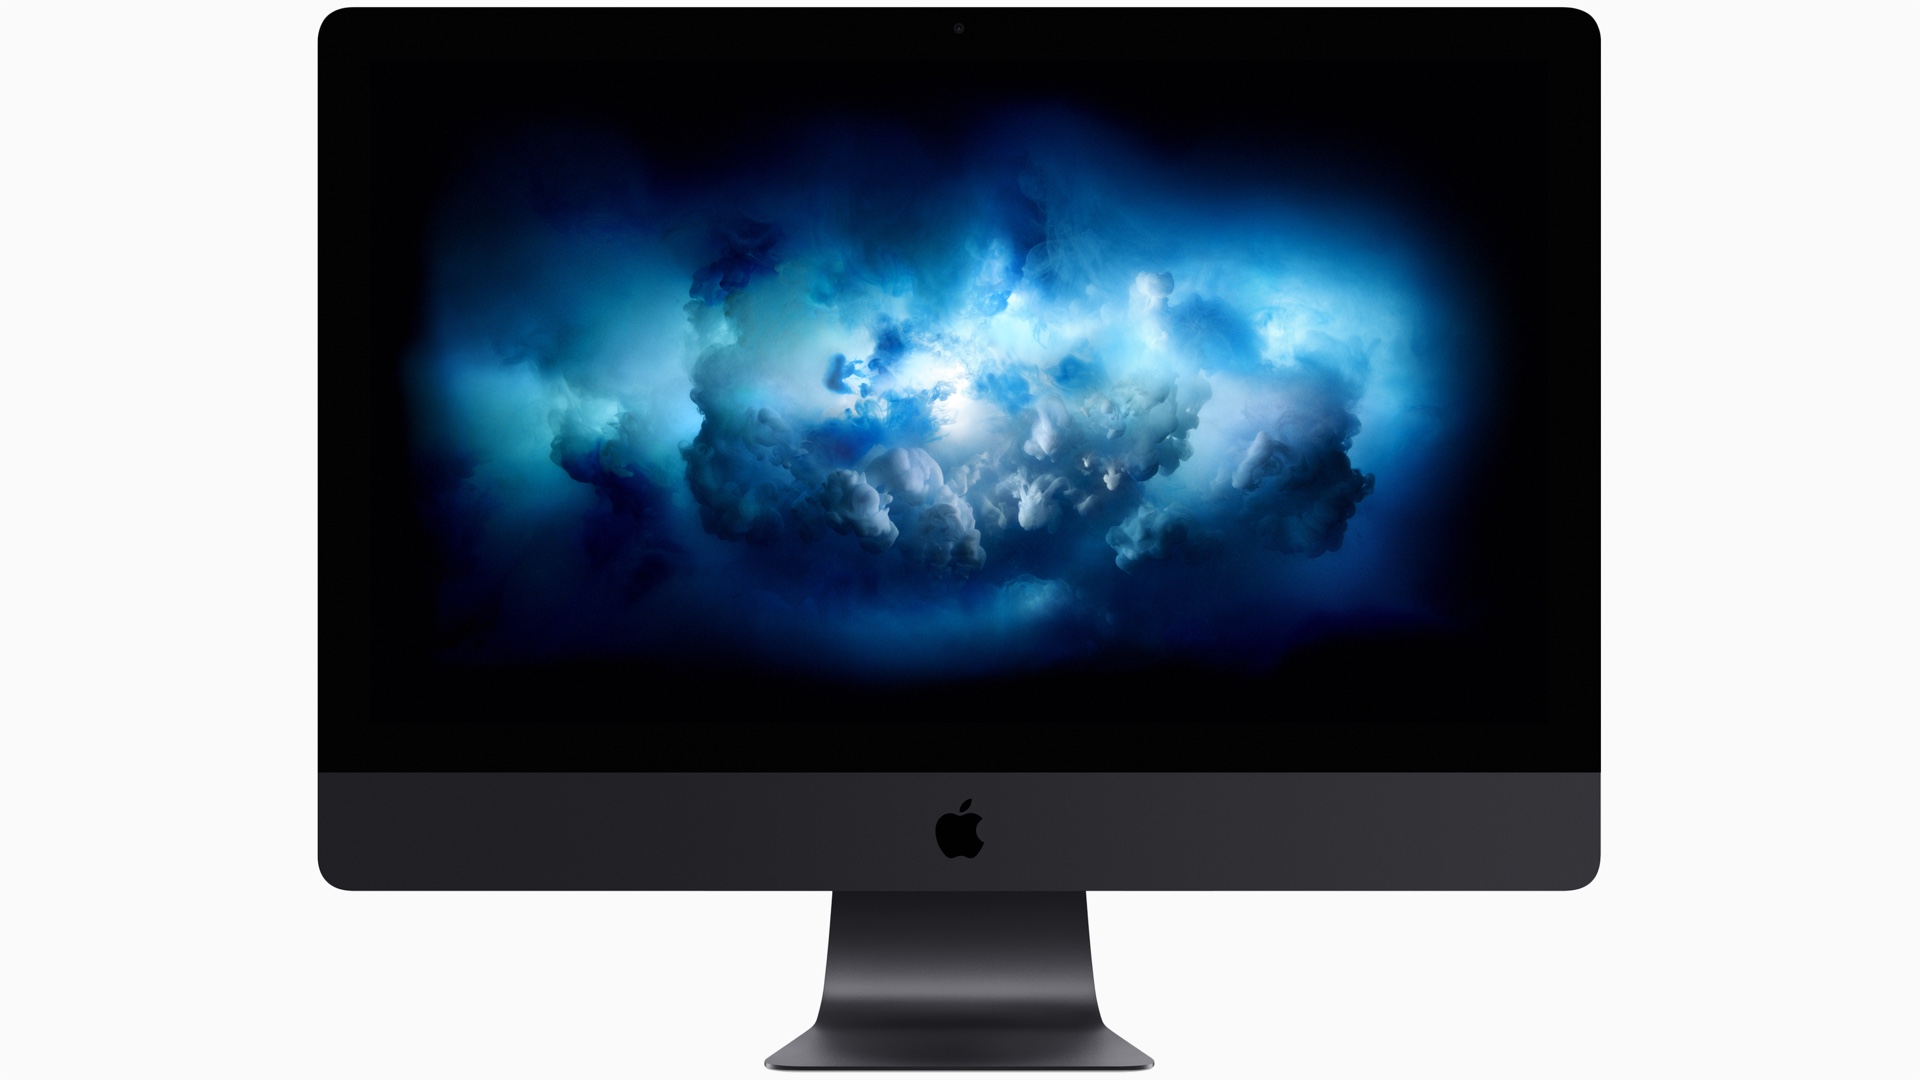 iMac Pro mới sẽ được trang bị cả chip A10 Fusion cùng với tính năng "Hey Siri"